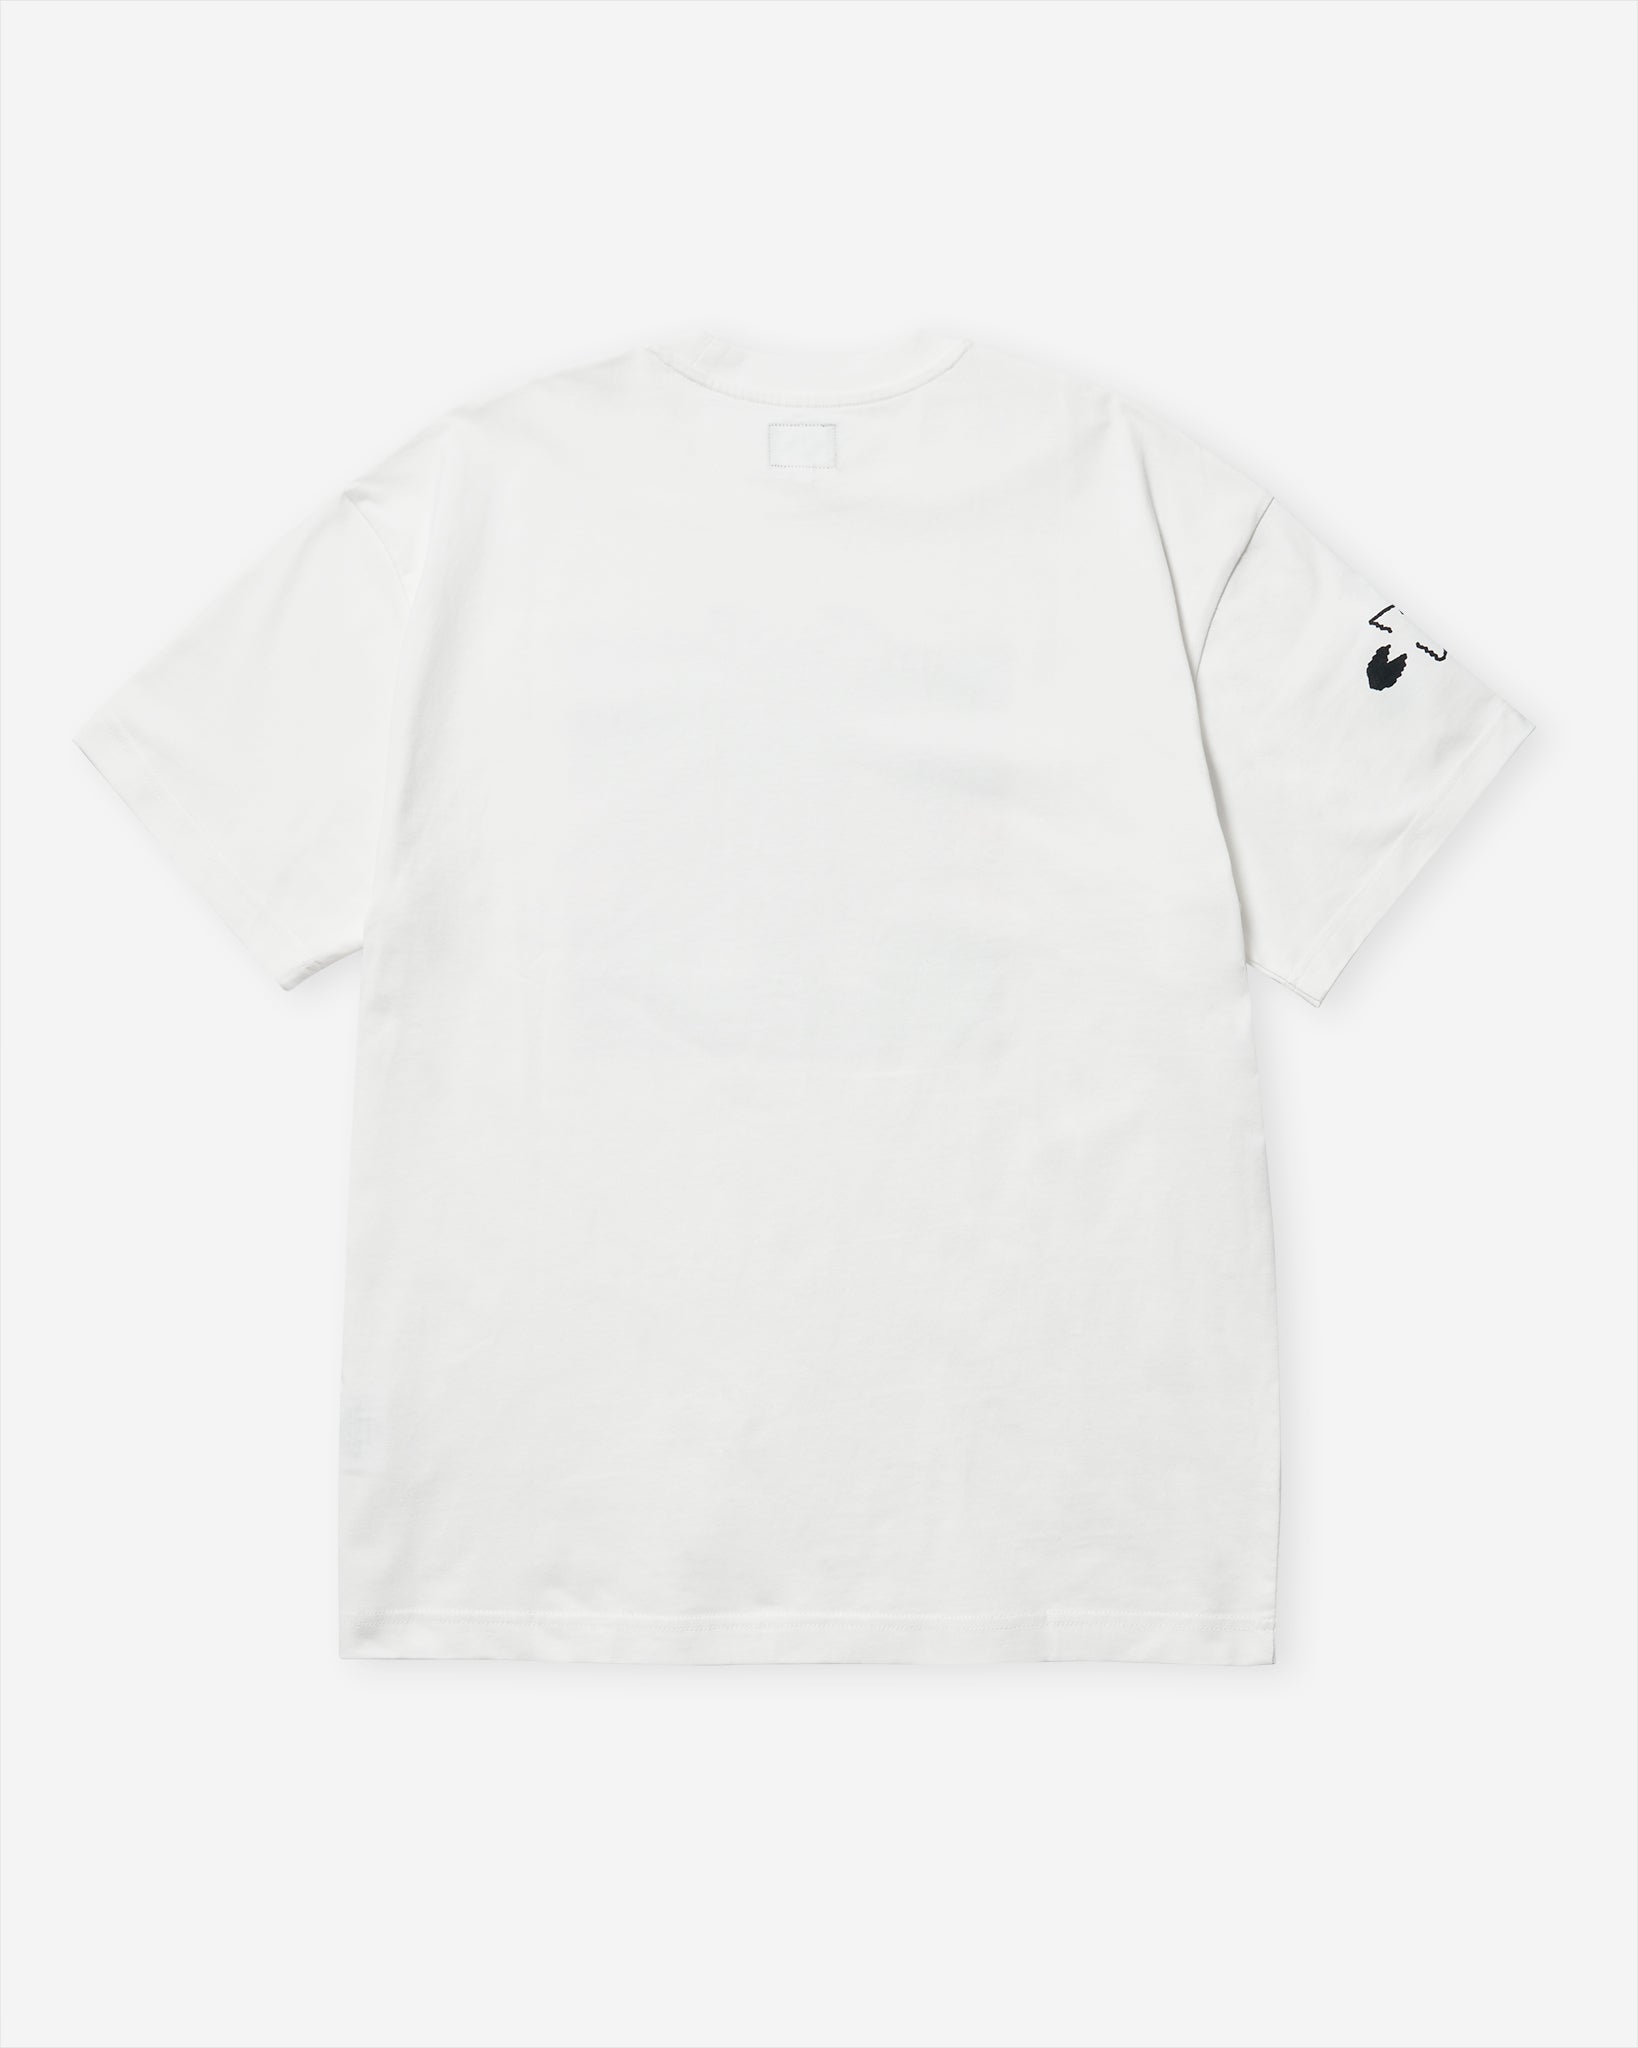 Shyclops T-Shirt - White